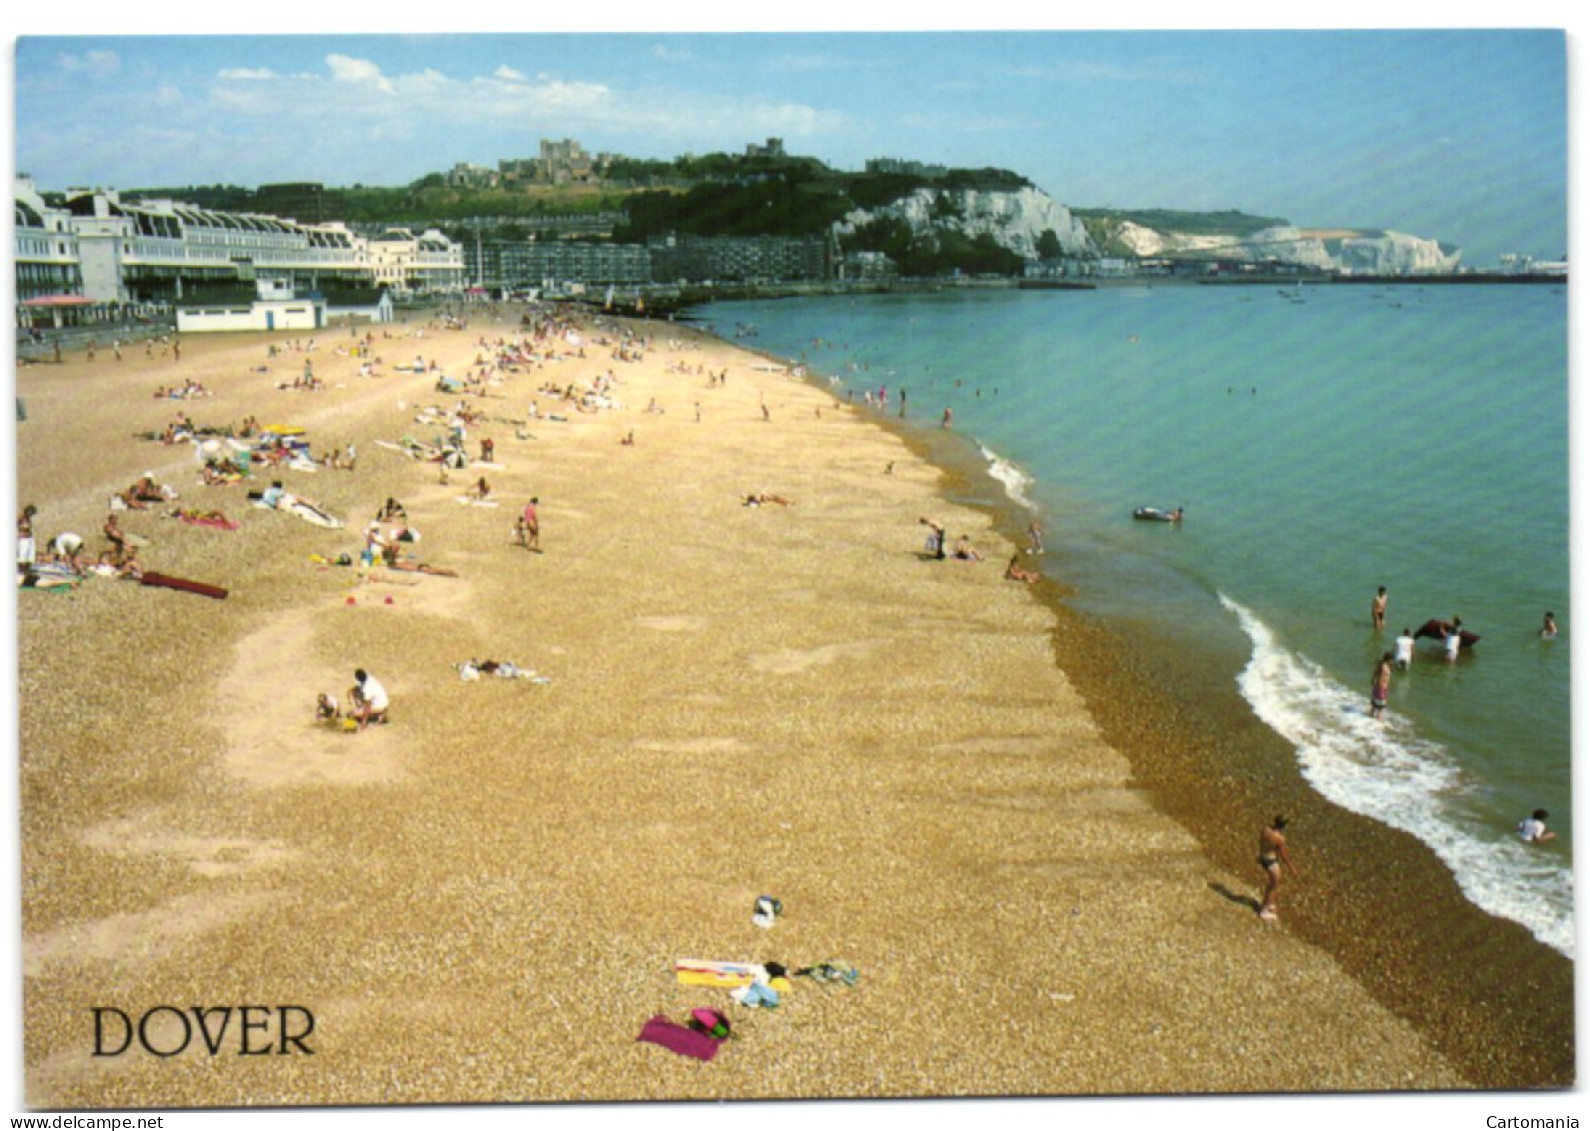 Dover - The Beach - Dover